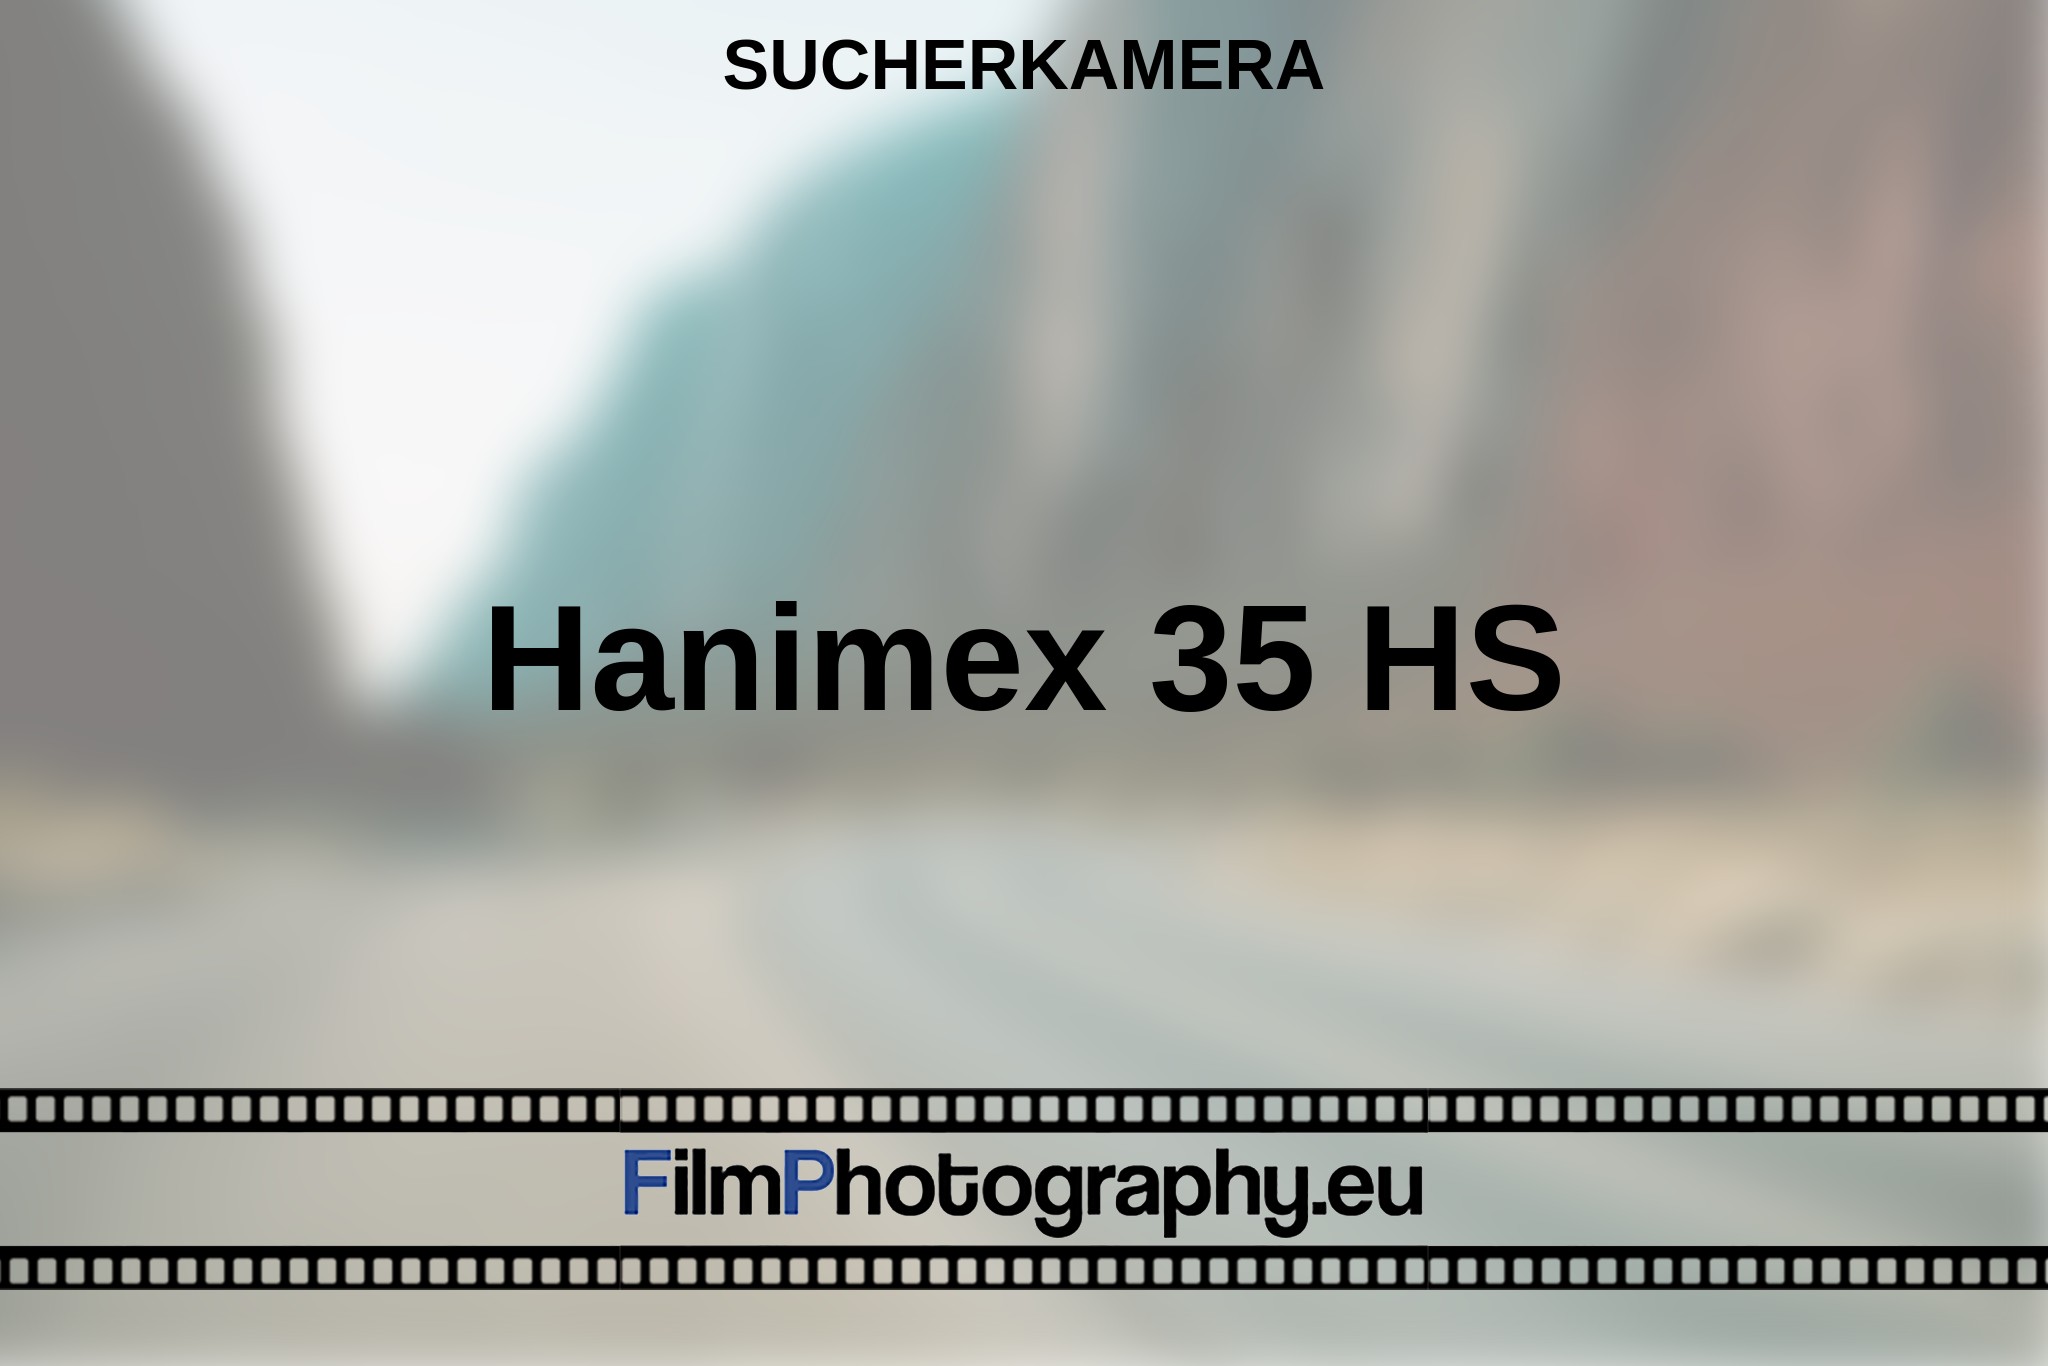 hanimex-35-hs-sucherkamera-bnv.jpg